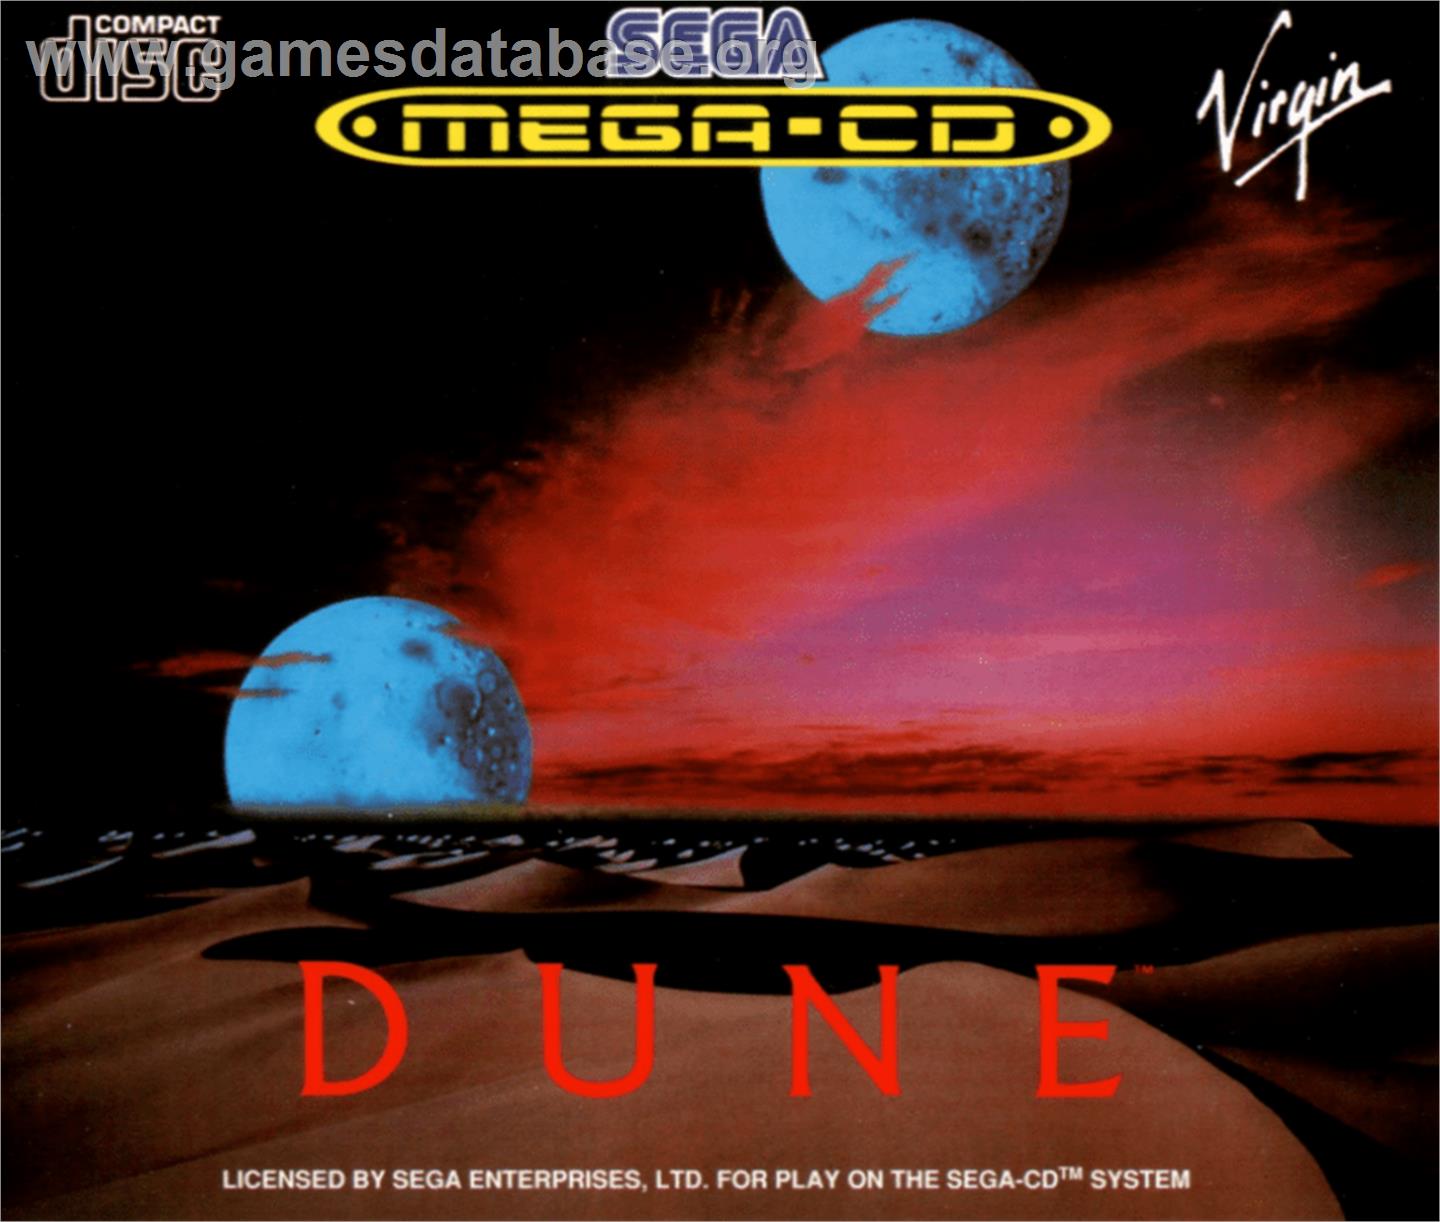 Dune - Sega CD - Artwork - Box